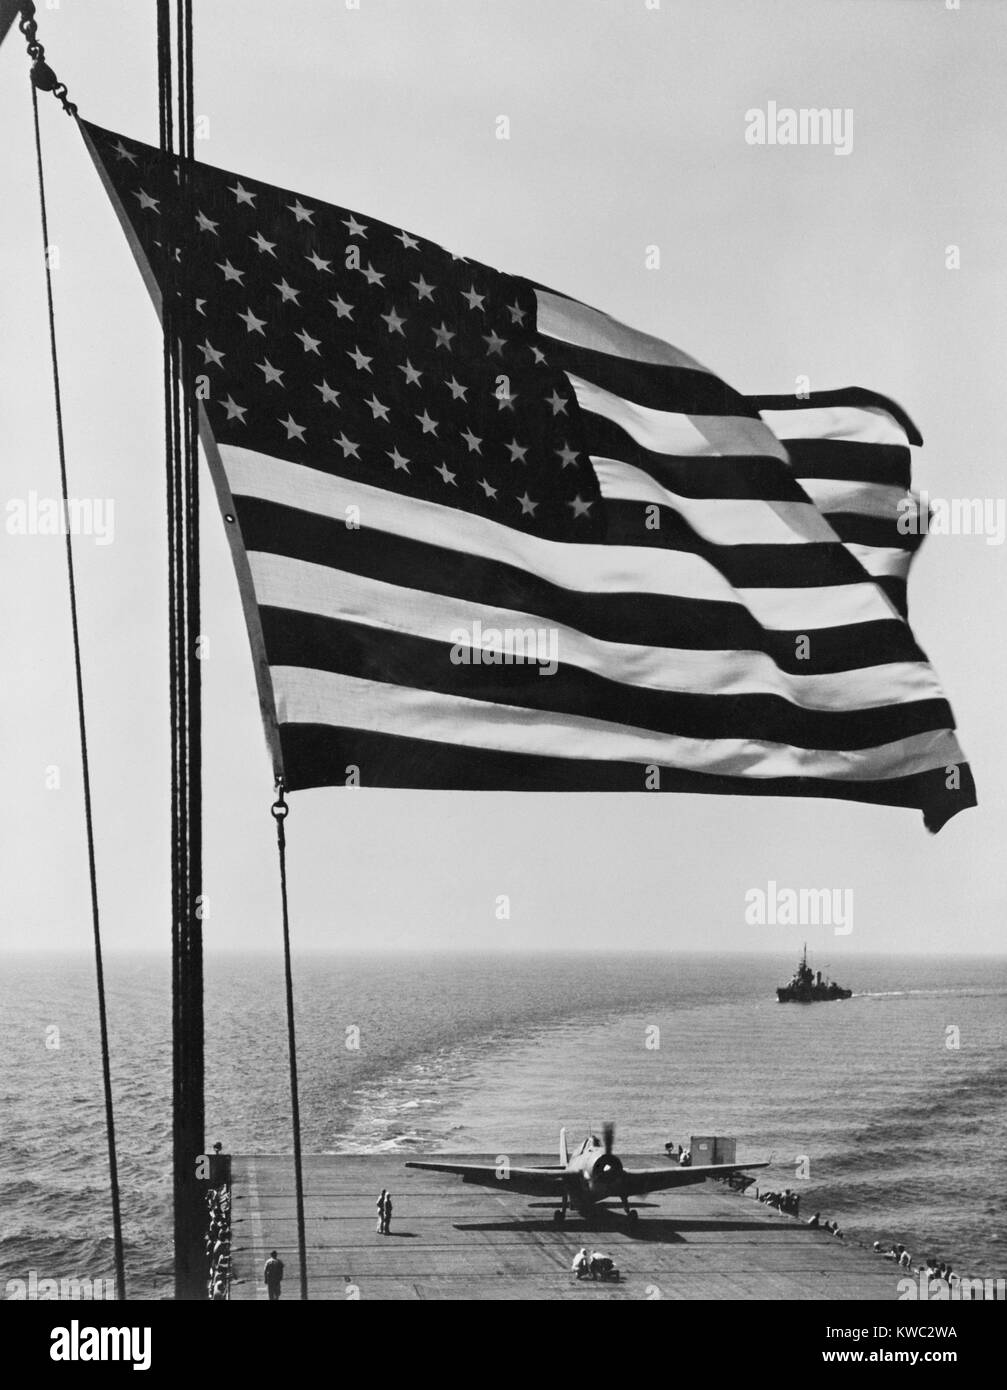 Bandiera degli Stati Uniti scatta nella brezza su la USS Santee. Novembre 1942. USS Santee è stato uno dei 4 vettori di scorta nel funzionamento torcia, il nov. 1942 invasione alleata del Nord Africa. Foto di Orazio Bristol, membro dell'U.S. Aviazione Navale unità fotografiche, sotto il comando del Cap. Edward Steichen. Guerra mondiale 2. (BSLOC 2015 13 119) Foto Stock